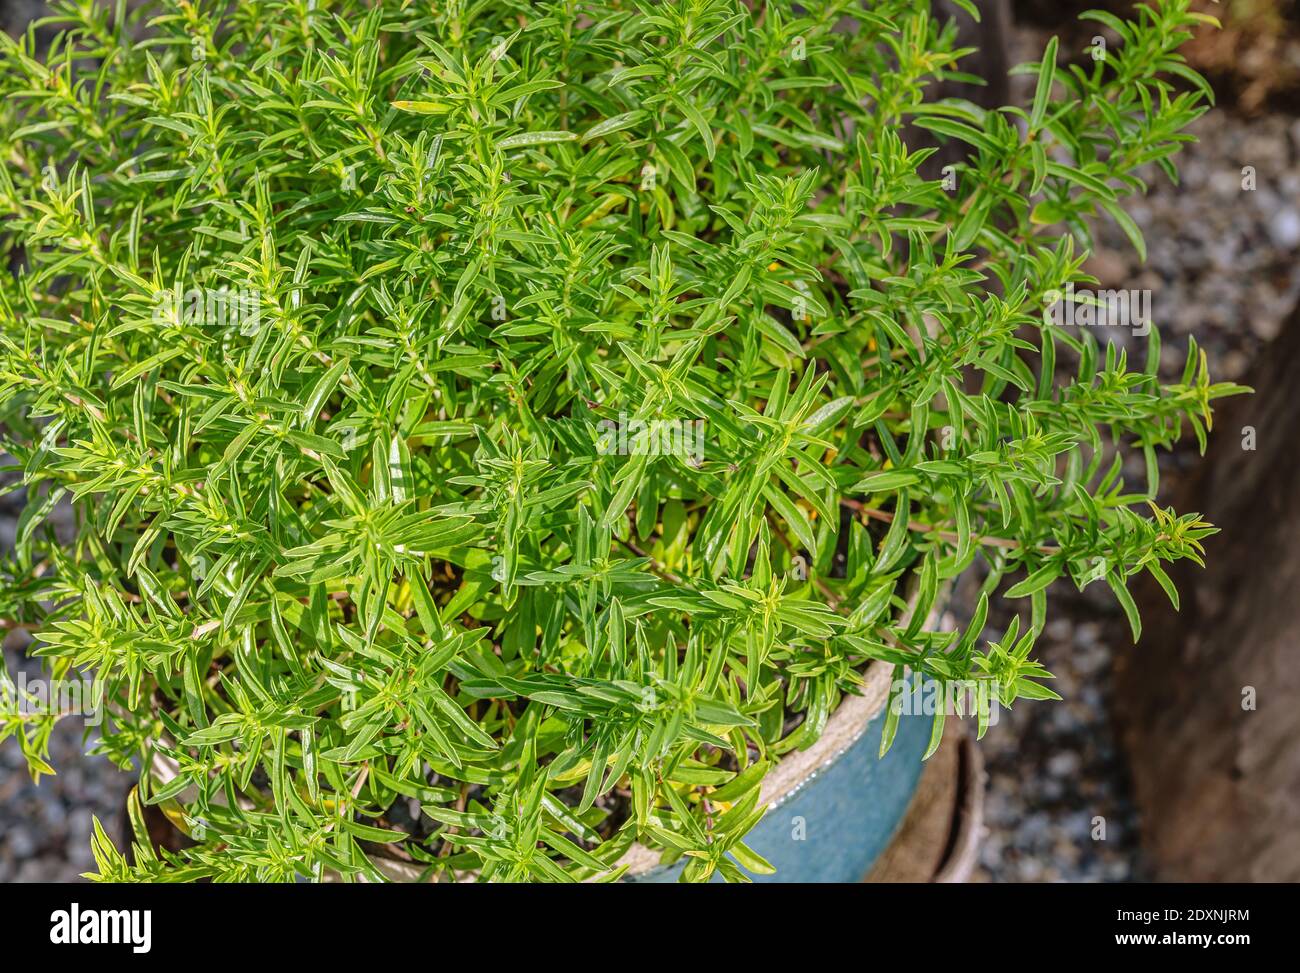 Limón Salado de invierno (Satureja montana citriodora) arbusto Foto de stock